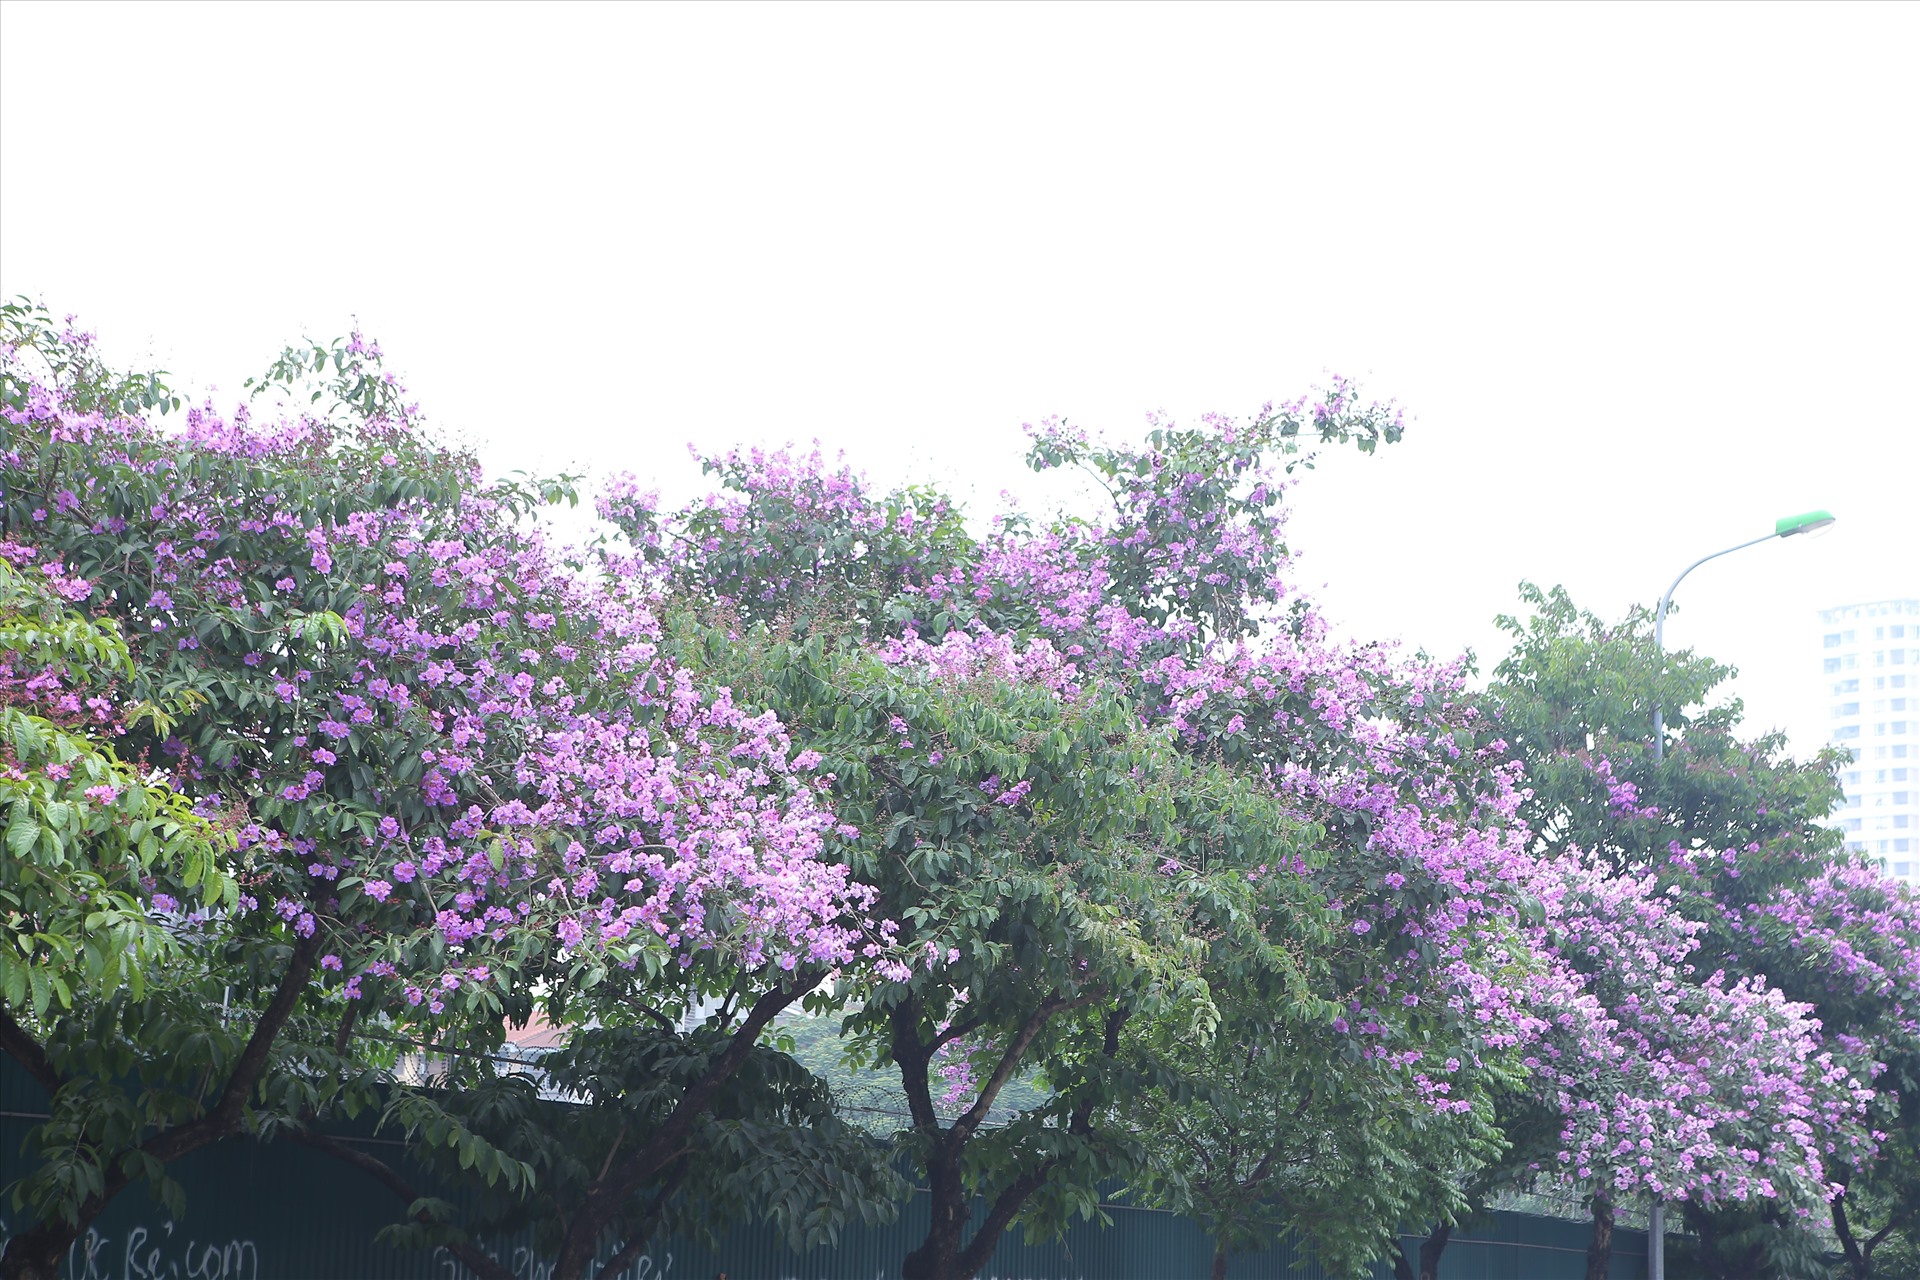 Trên phố Trần Thái Tông, hoa bằng lăng nở rộ làm cả đoạn phố rực rỡ màu hoa tím ngắt.